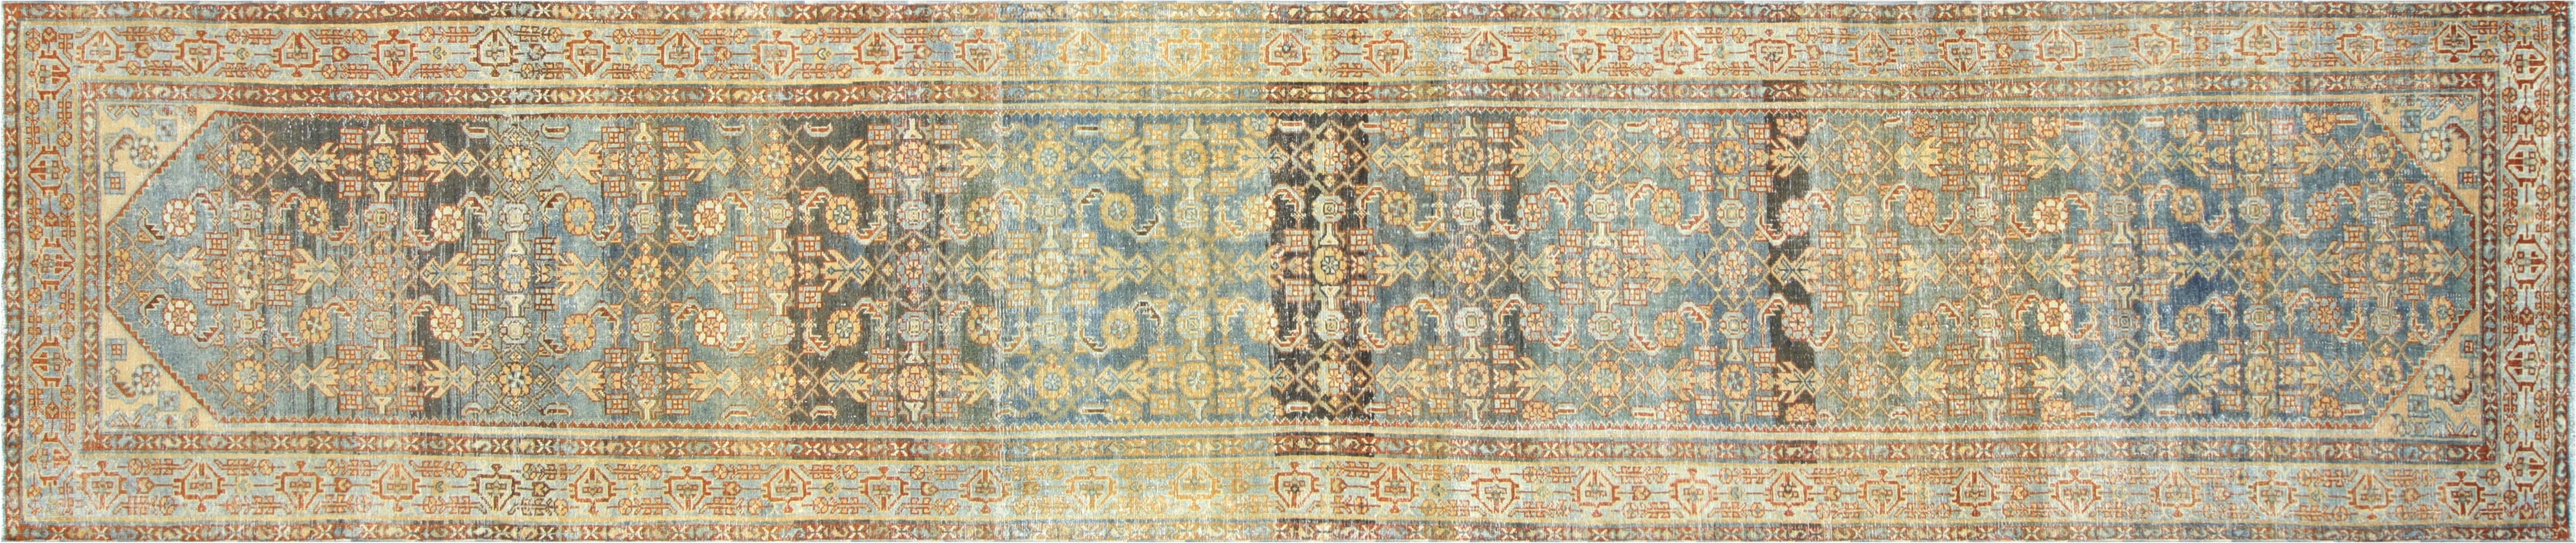 Antique Persian Melayer Runner - 3'3" x 15'11"